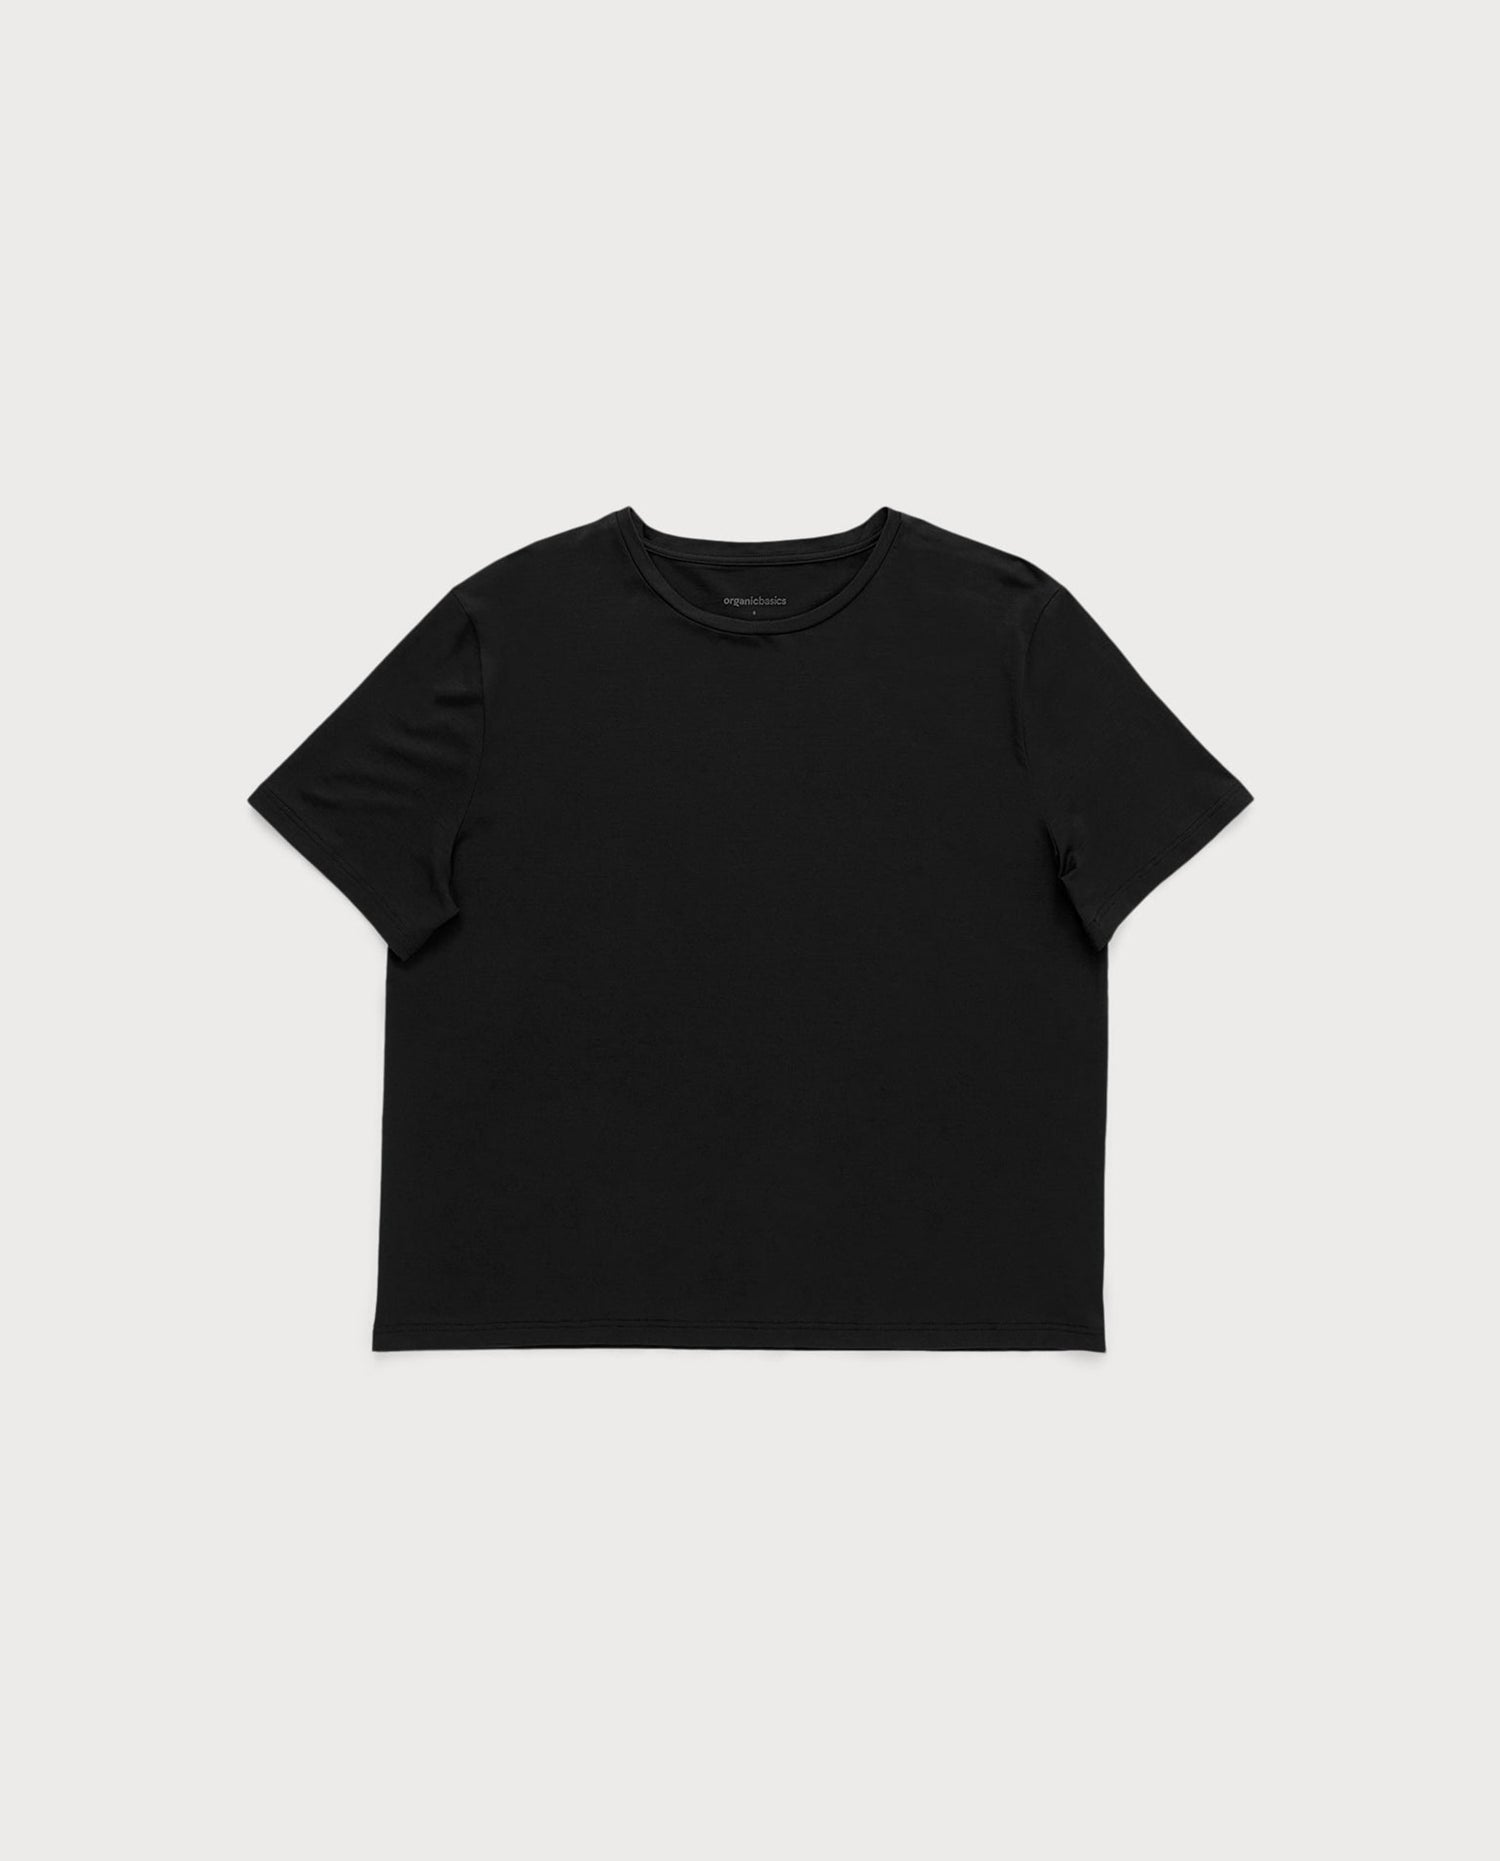 marché commun organic basics femme t-shirt tencel naturel manches courtes noir